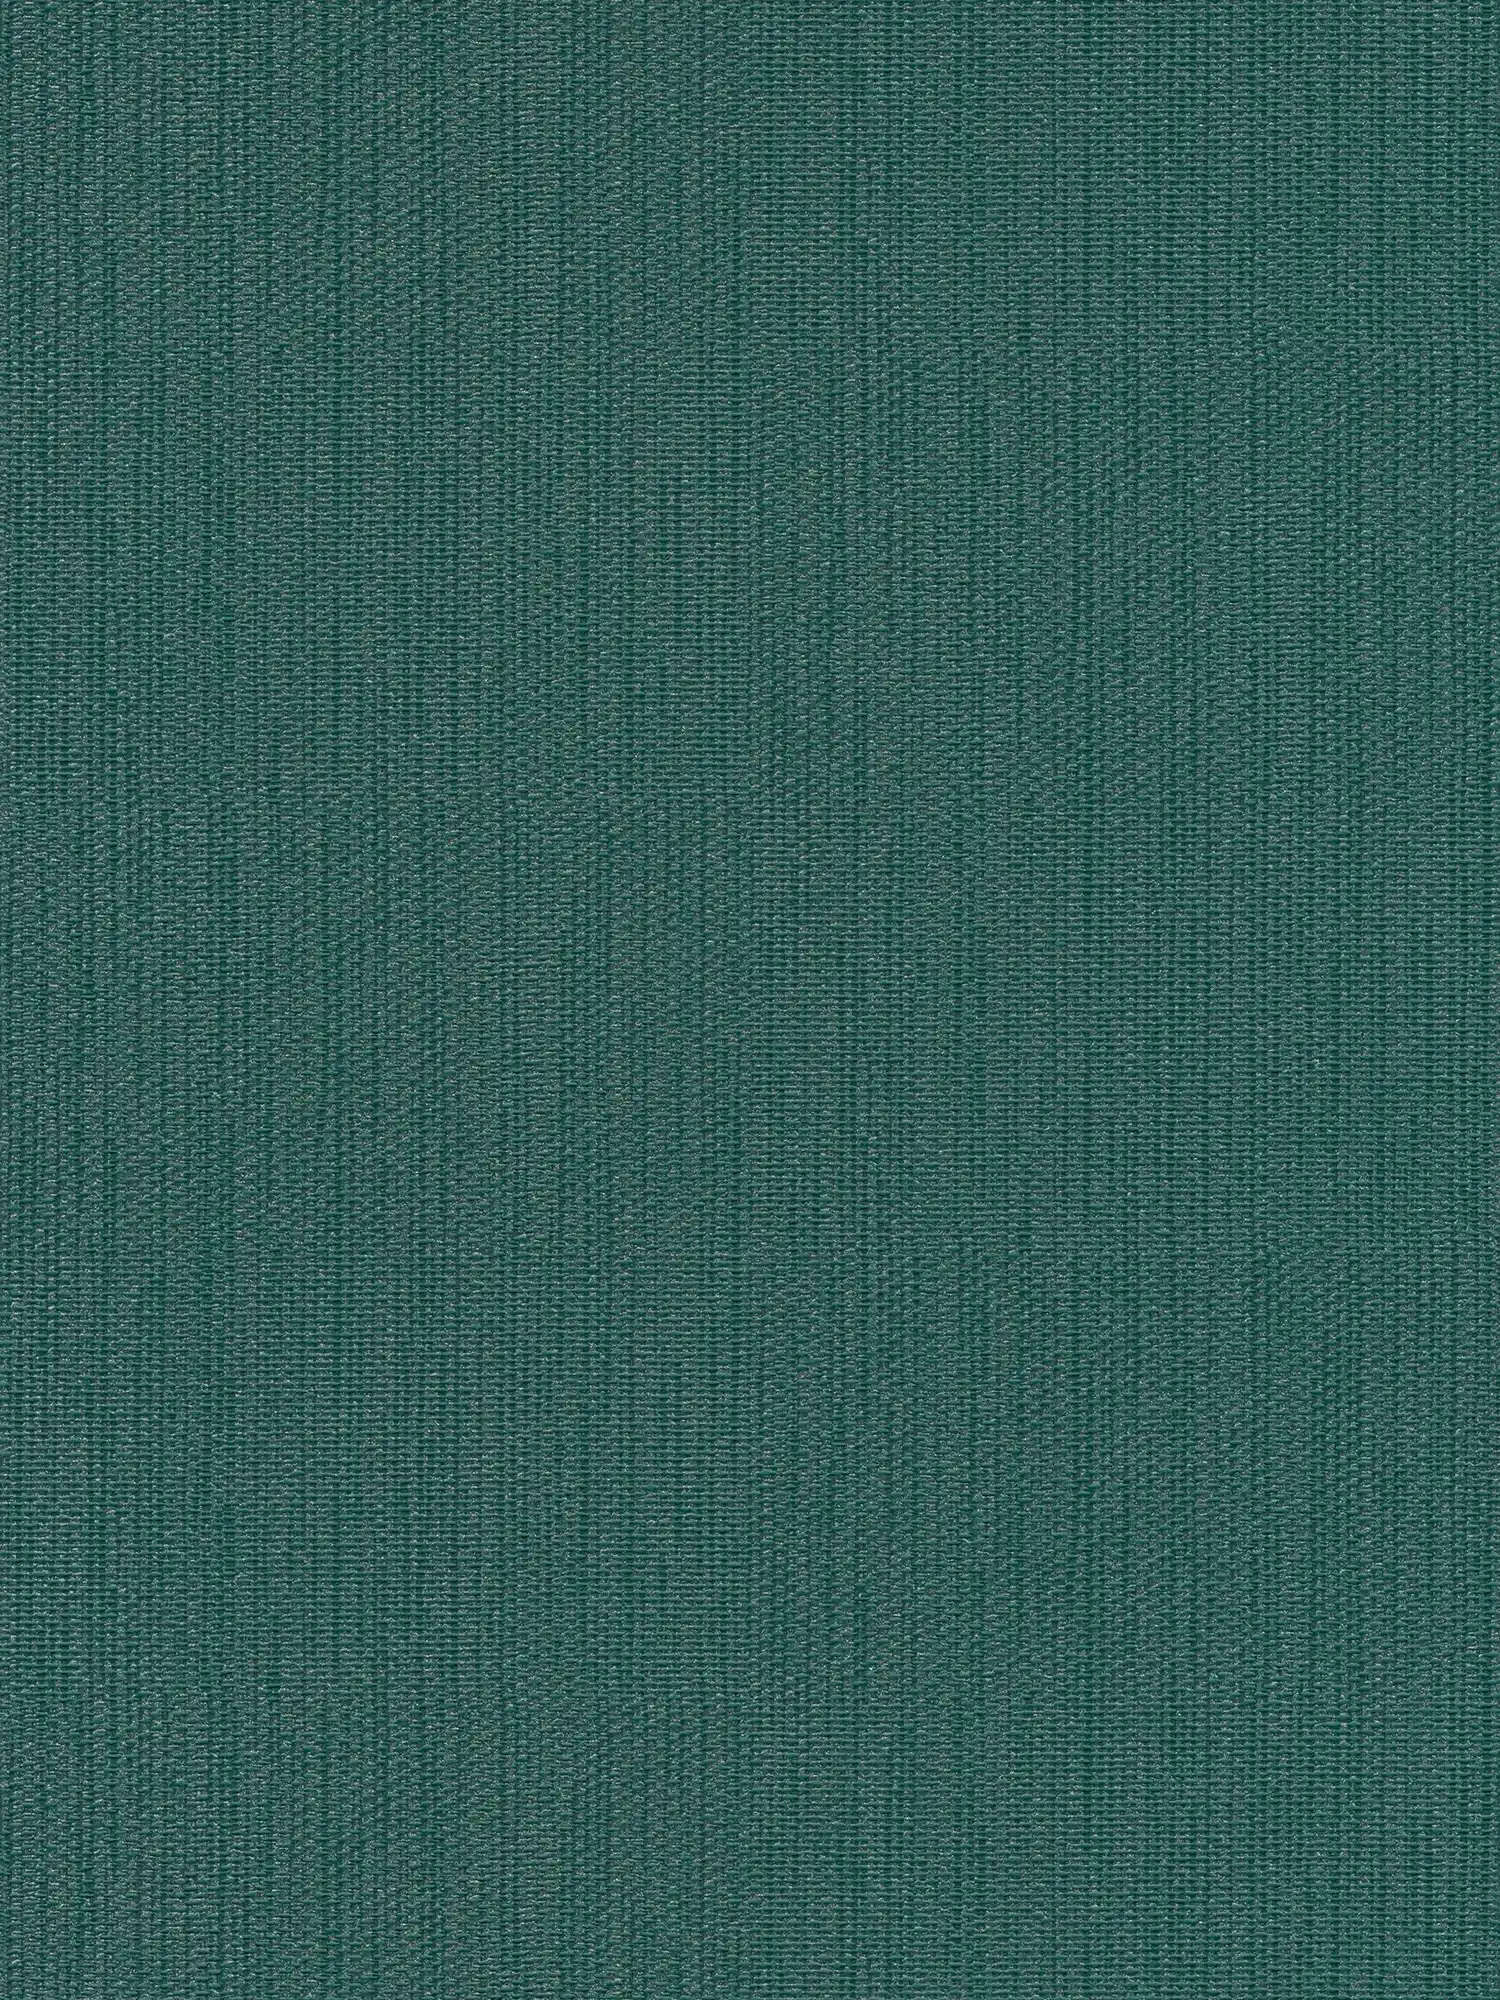 Carta da parati monocolore in tessuto non tessuto in look tessile - verde, verde scuro
